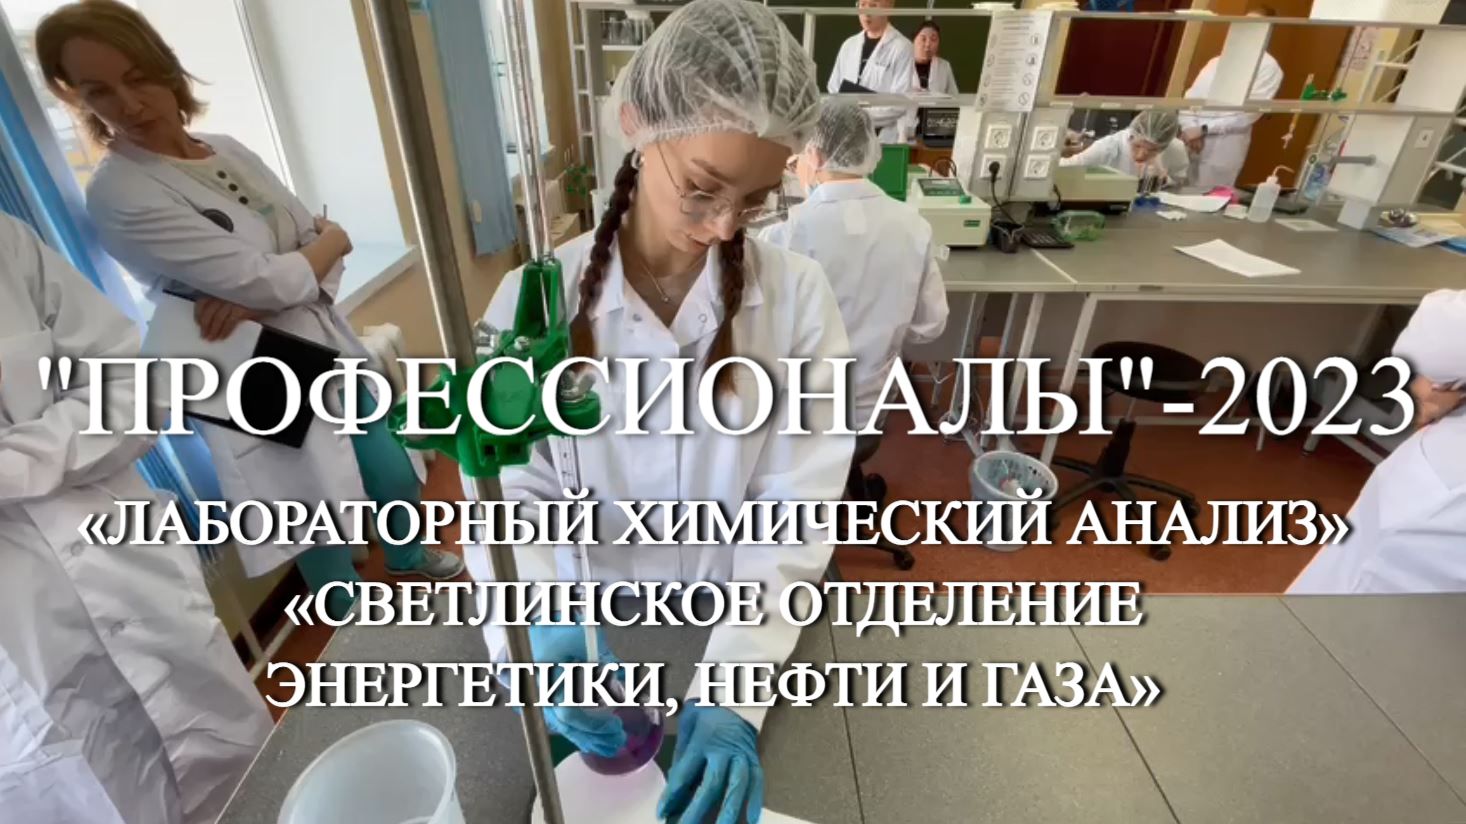 Первый день соревнований «Профессионалы»-2023 по компетенции «Лабораторный химический анализ» в «Све